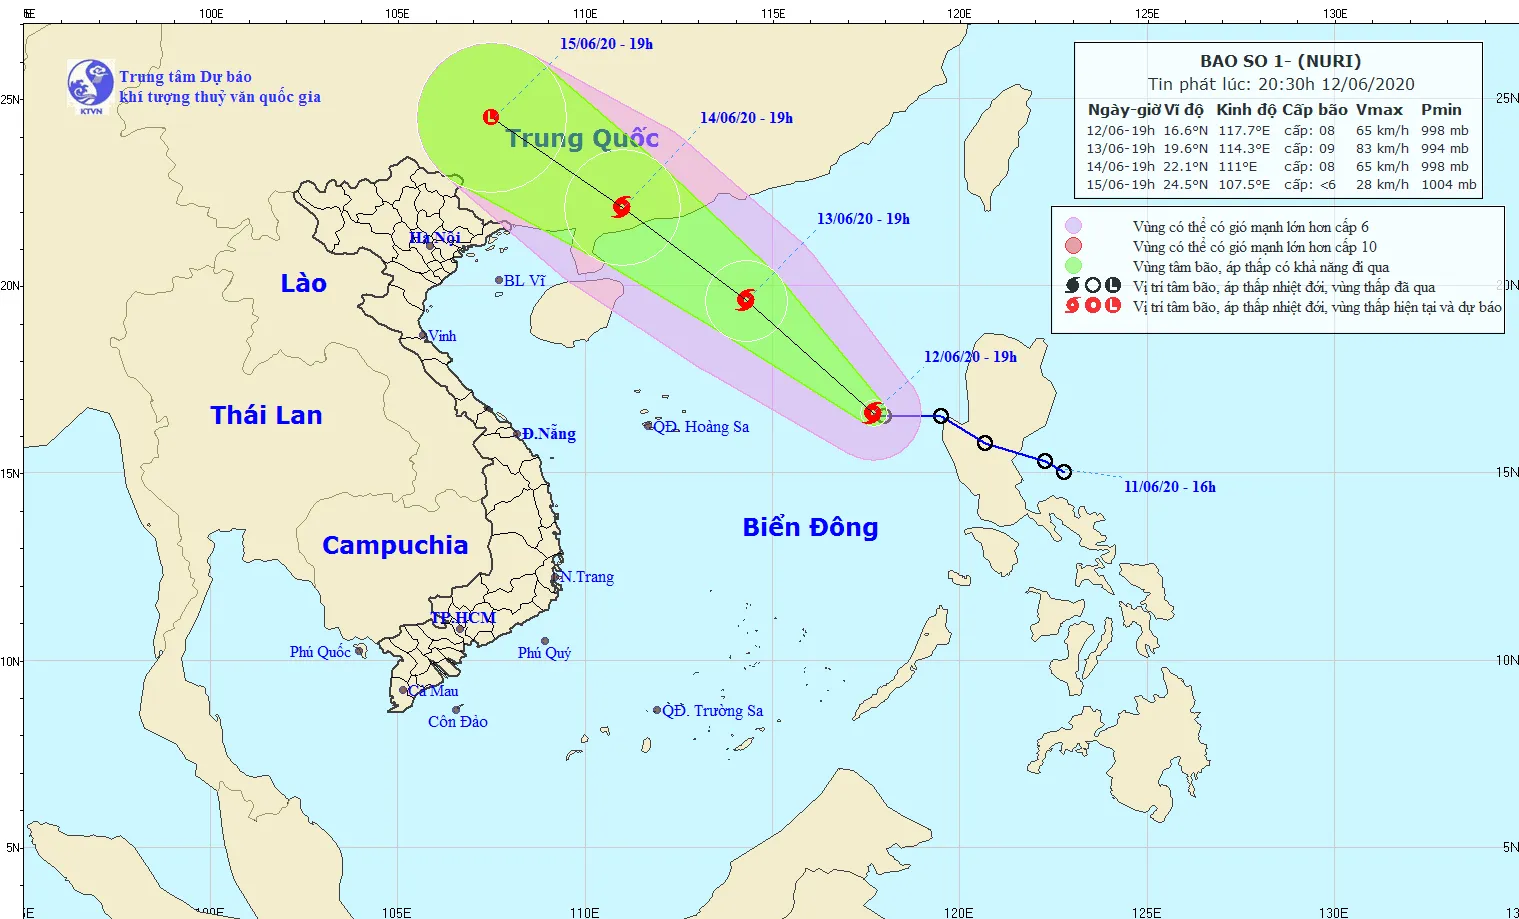 Vùng nguy hiểm trên Biển Đông trong 24 giờ tới (gió mạnh cấp 6, giật cấp 8): Phía Đông kinh tuyến 112,0 độ Kinh Đông; từ vĩ tuyến 15,5 độ Vĩ Bắc đến 21,0 độ Vĩ Bắc.